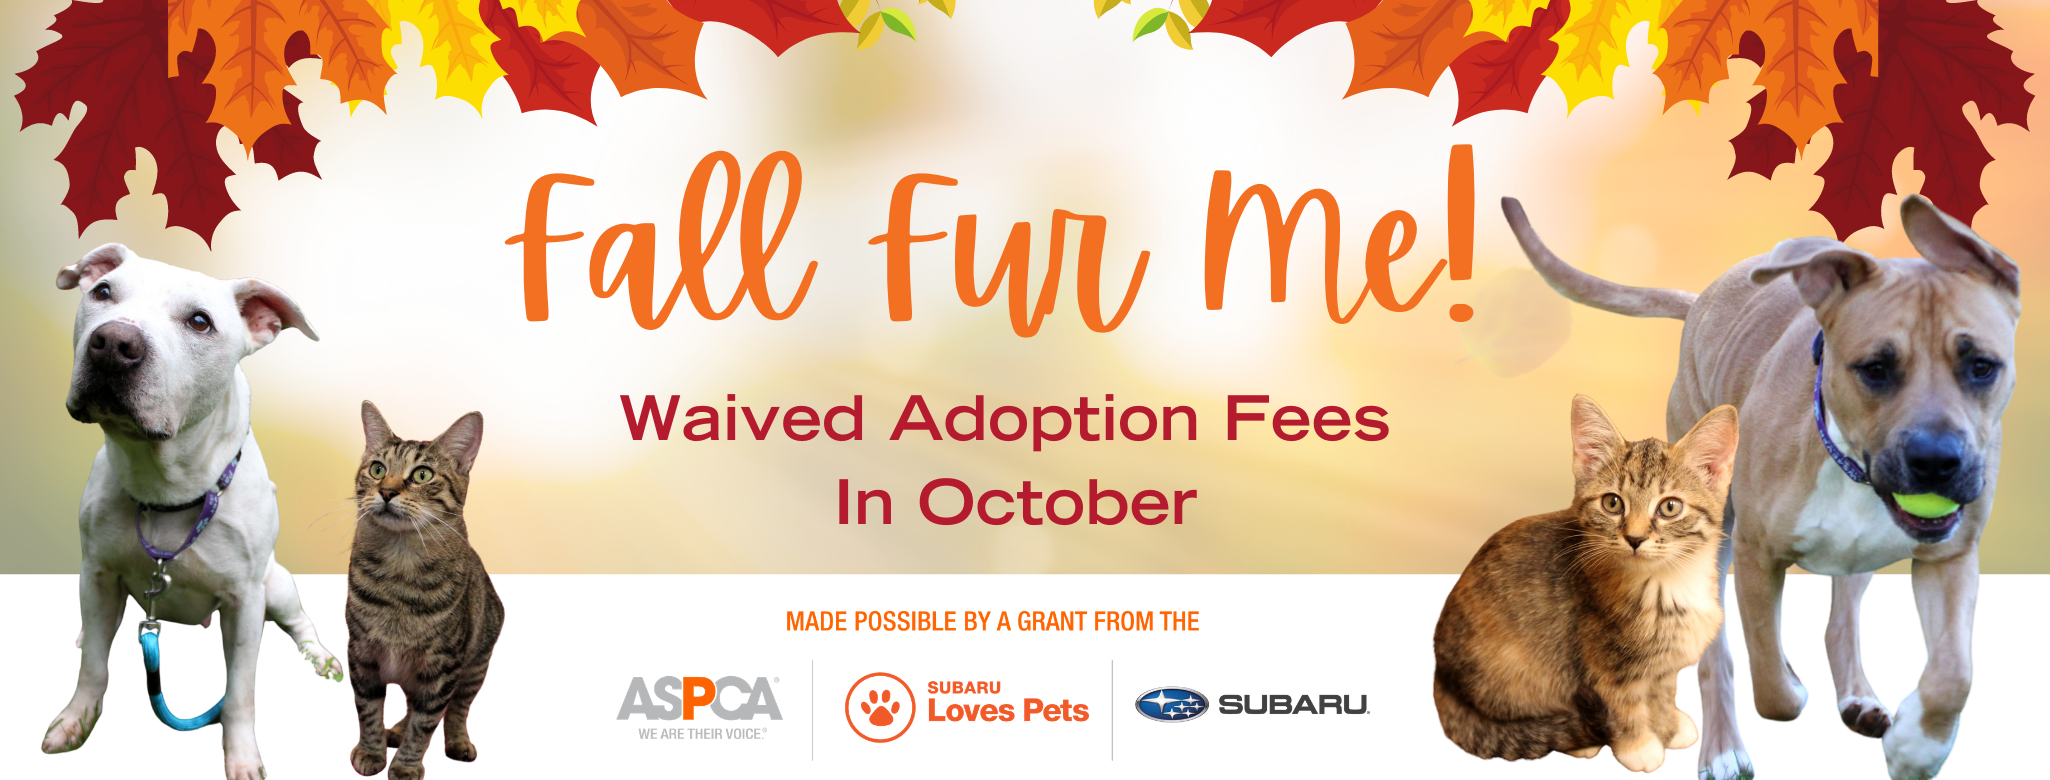 awa adoption fees